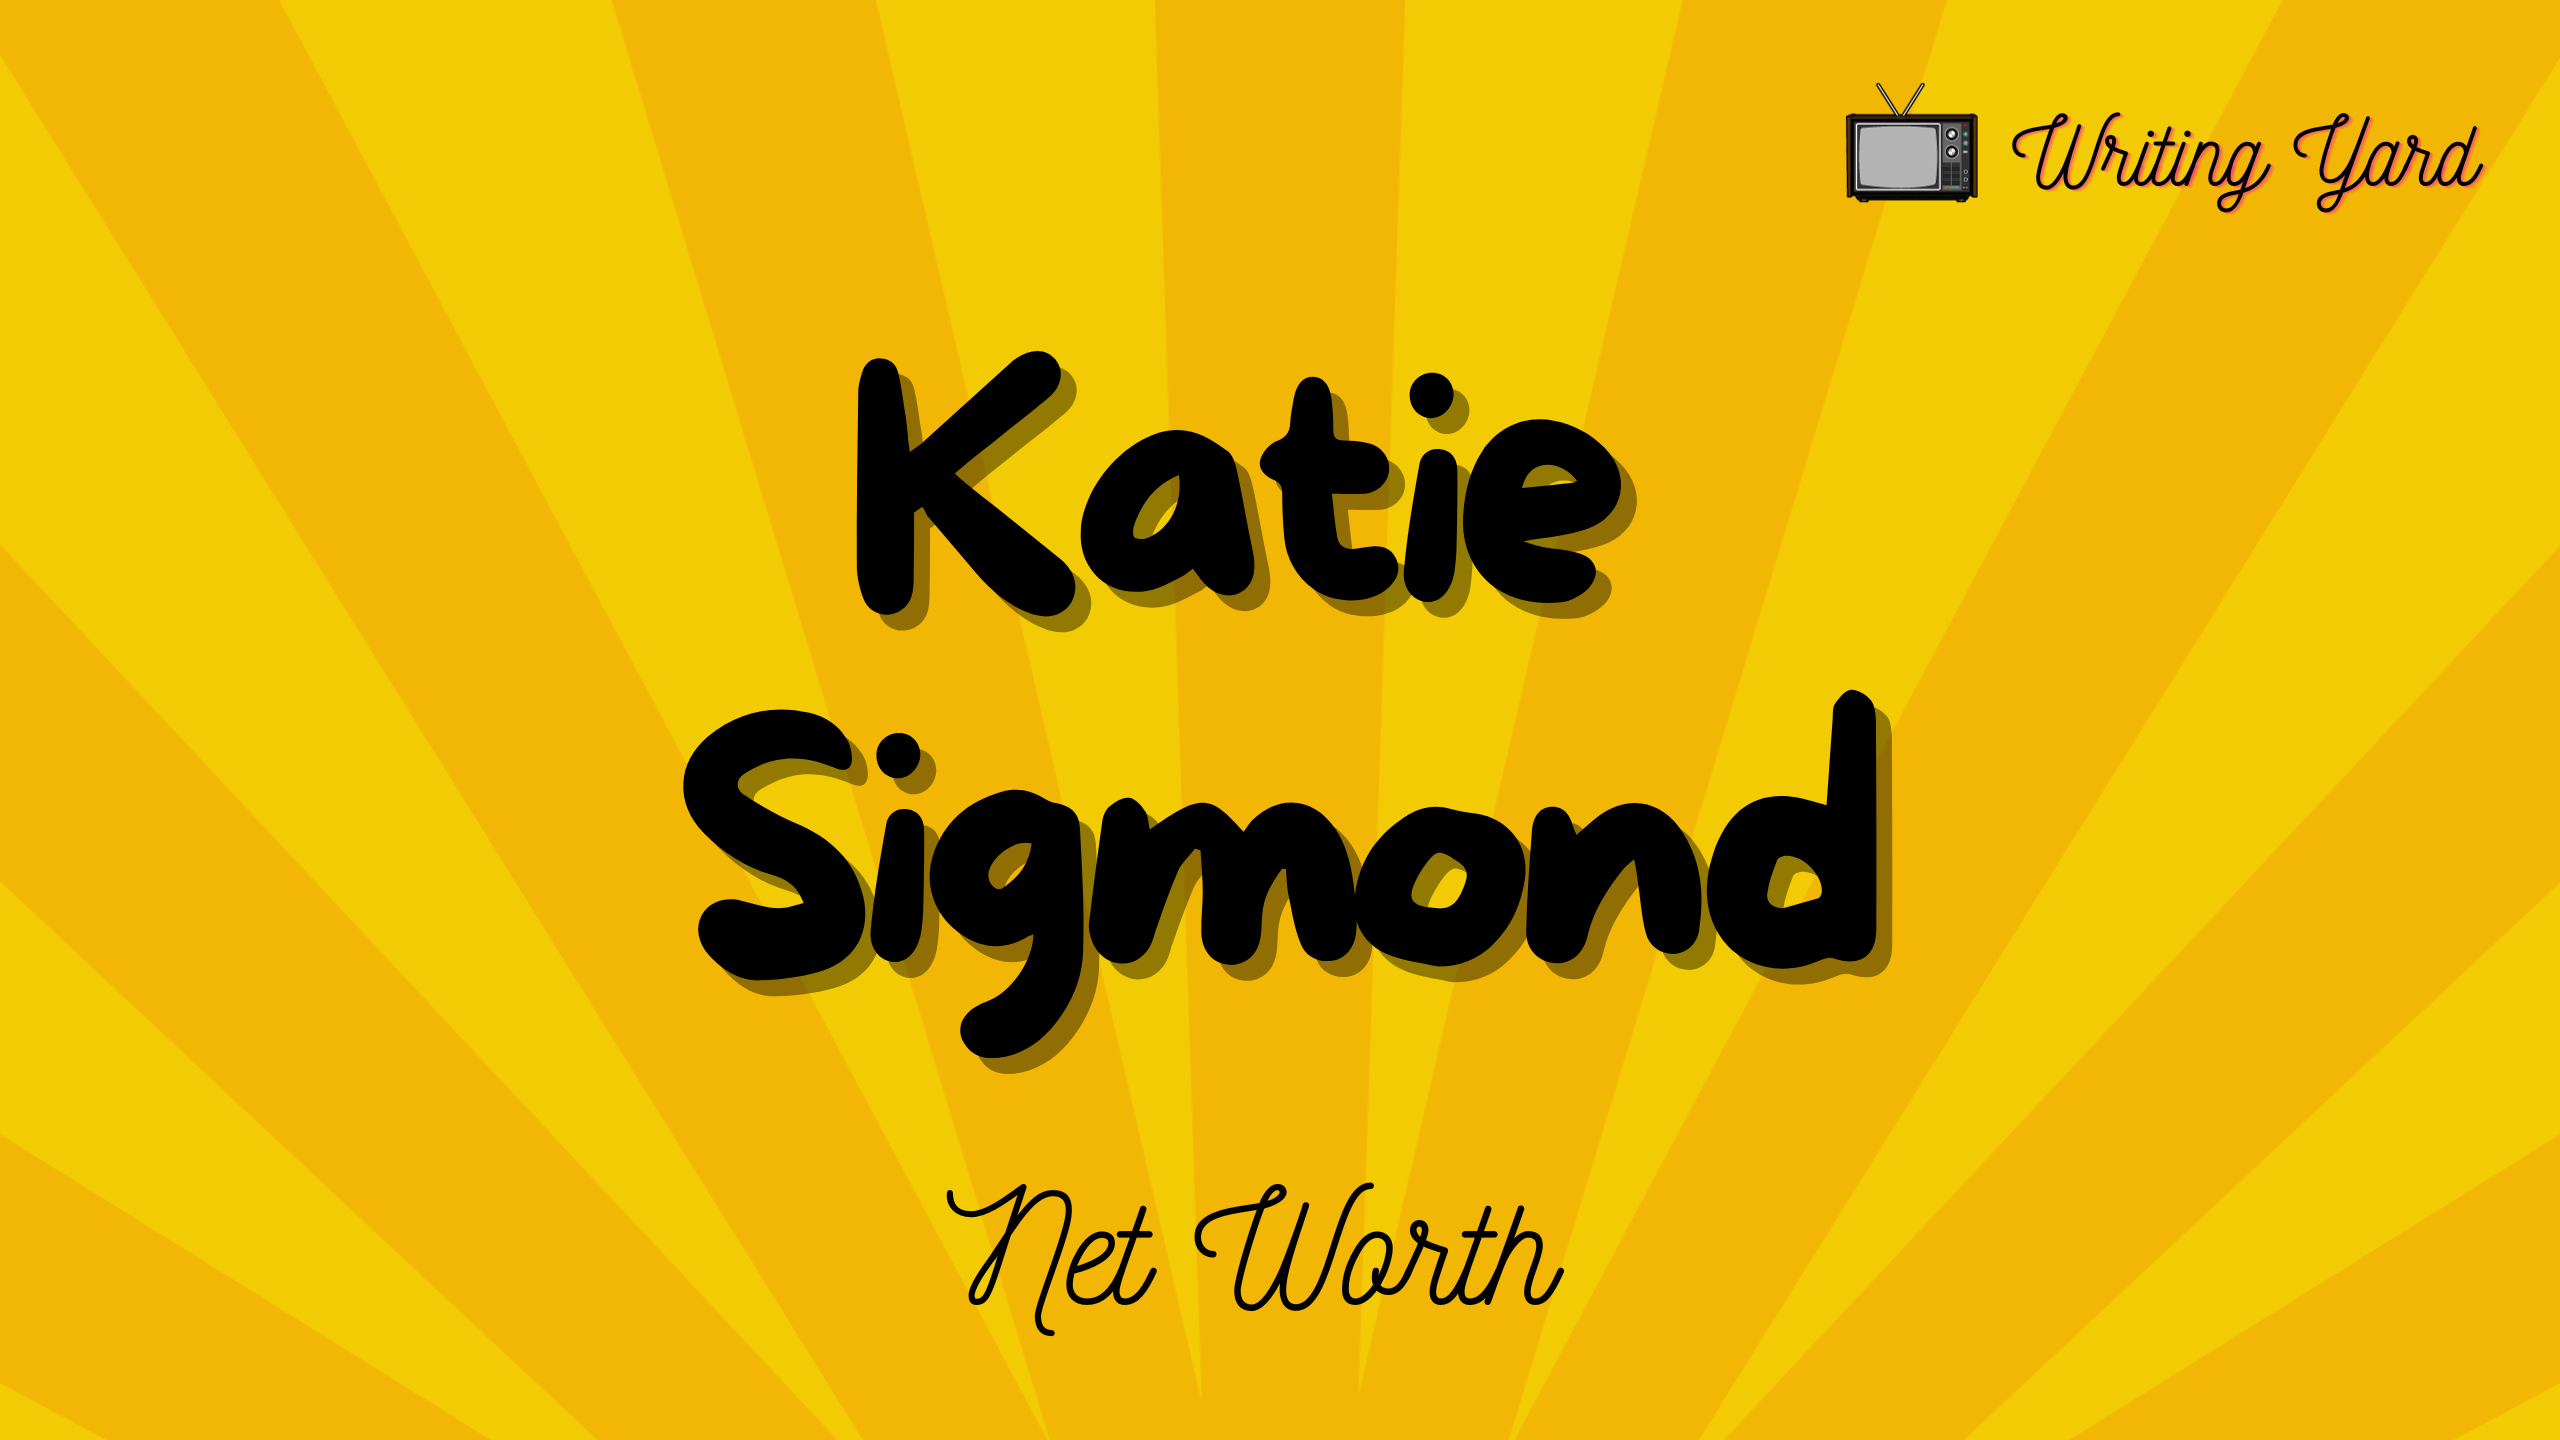 Katie Sigmond Net Worth